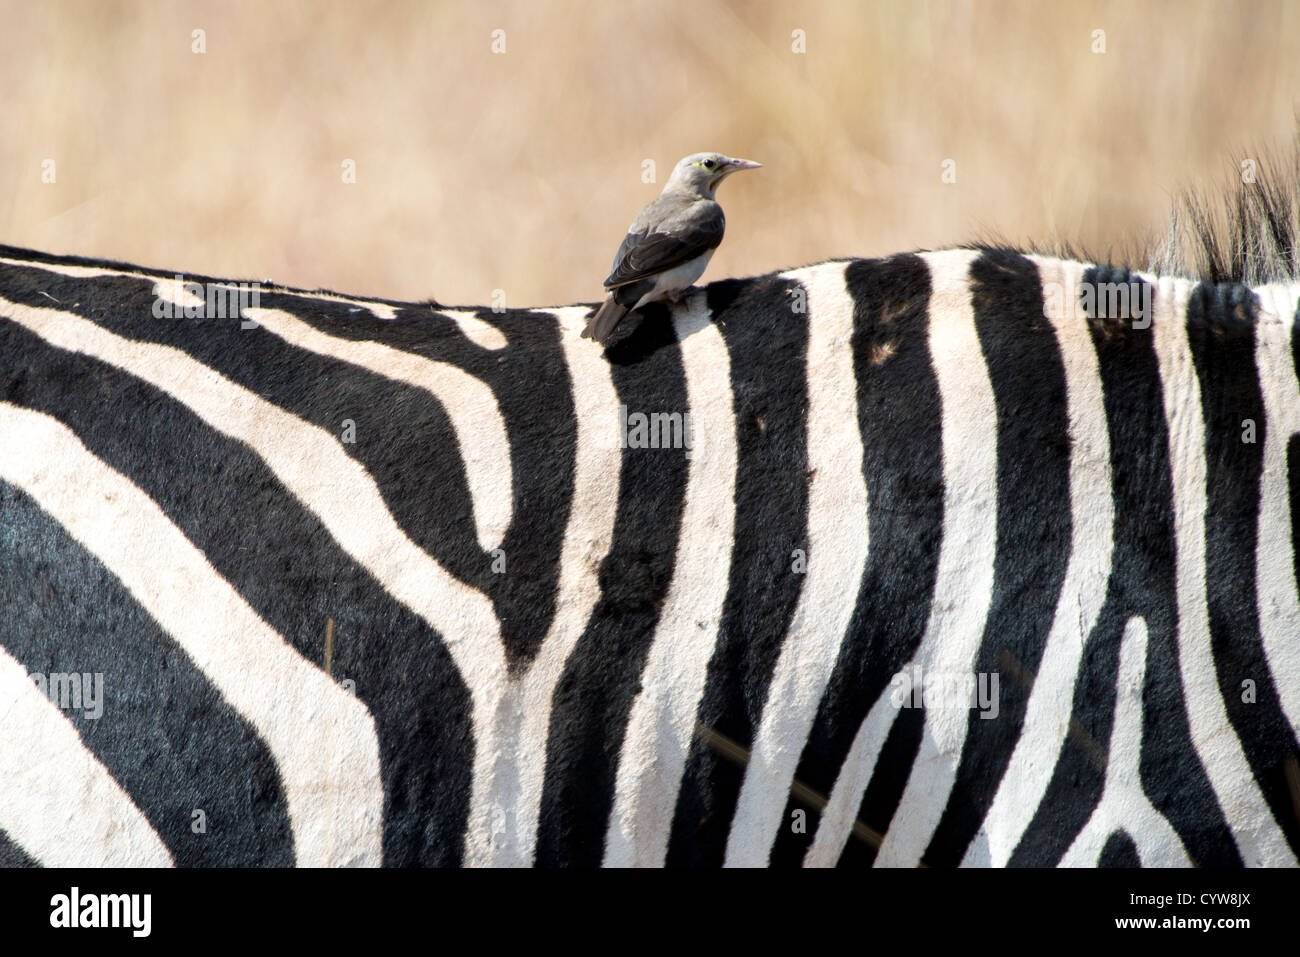 Parco Nazionale di Tarangire e, Tanzania - un piccolo uccello si trova sul retro di una zebra al Parco Nazionale di Tarangire e nel nord della Tanzania non lontano dal cratere di Ngorongoro e il Serengeti. Foto Stock